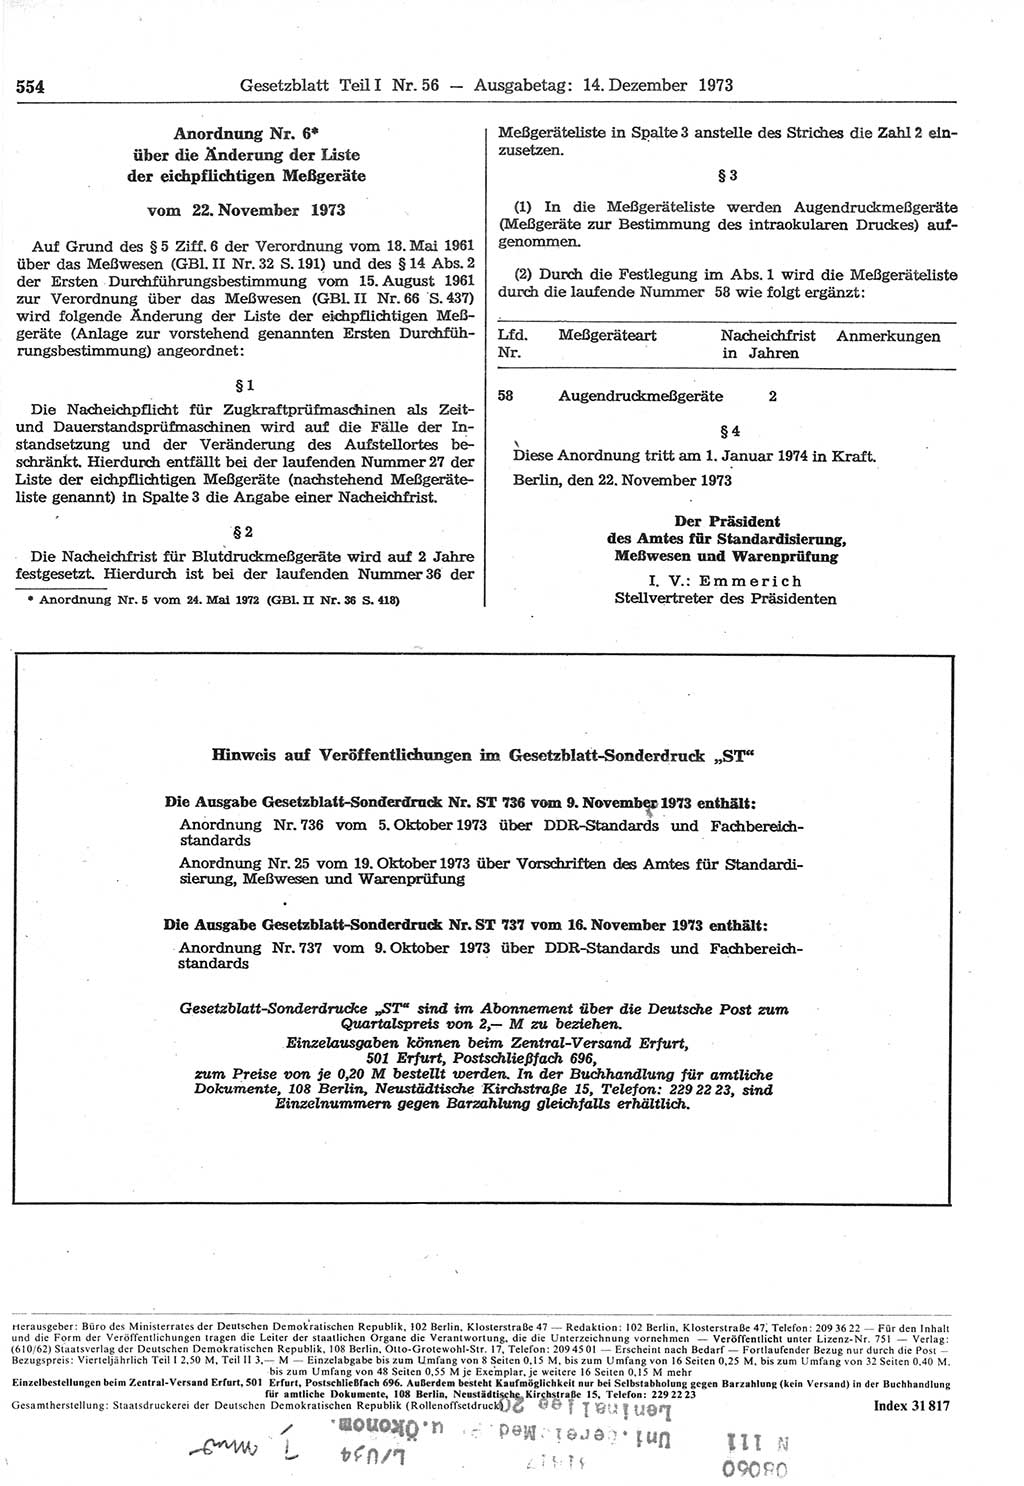 Gesetzblatt (GBl.) der Deutschen Demokratischen Republik (DDR) Teil Ⅰ 1973, Seite 554 (GBl. DDR Ⅰ 1973, S. 554)